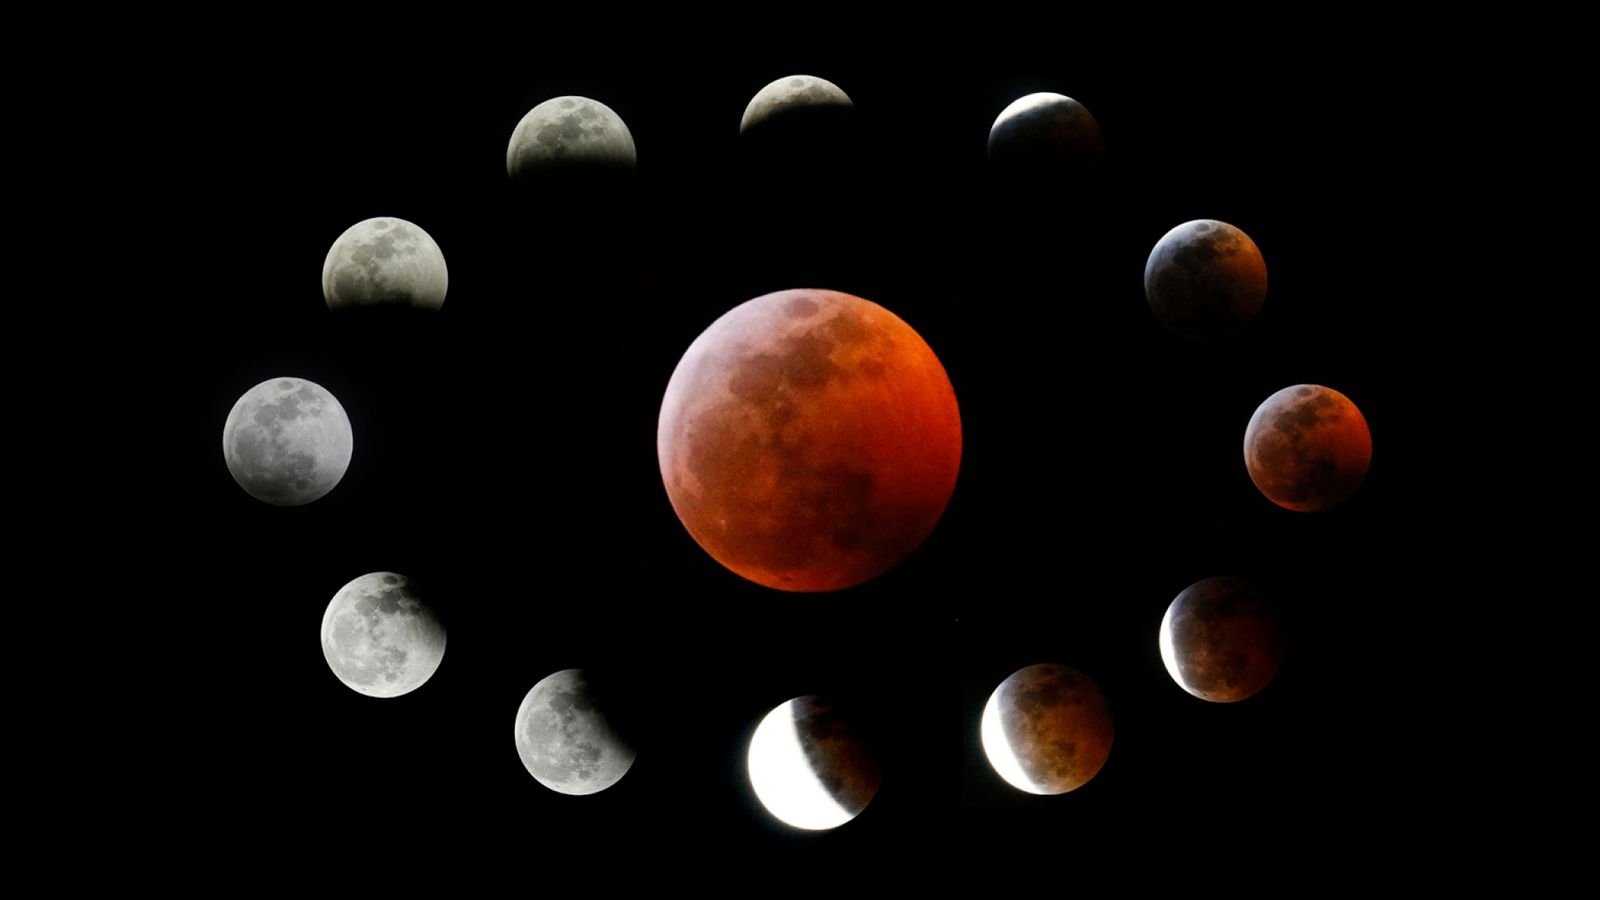 Sytë nga qielli, hëna pritet të japë “spektaklin” më të madh për vitin 2019